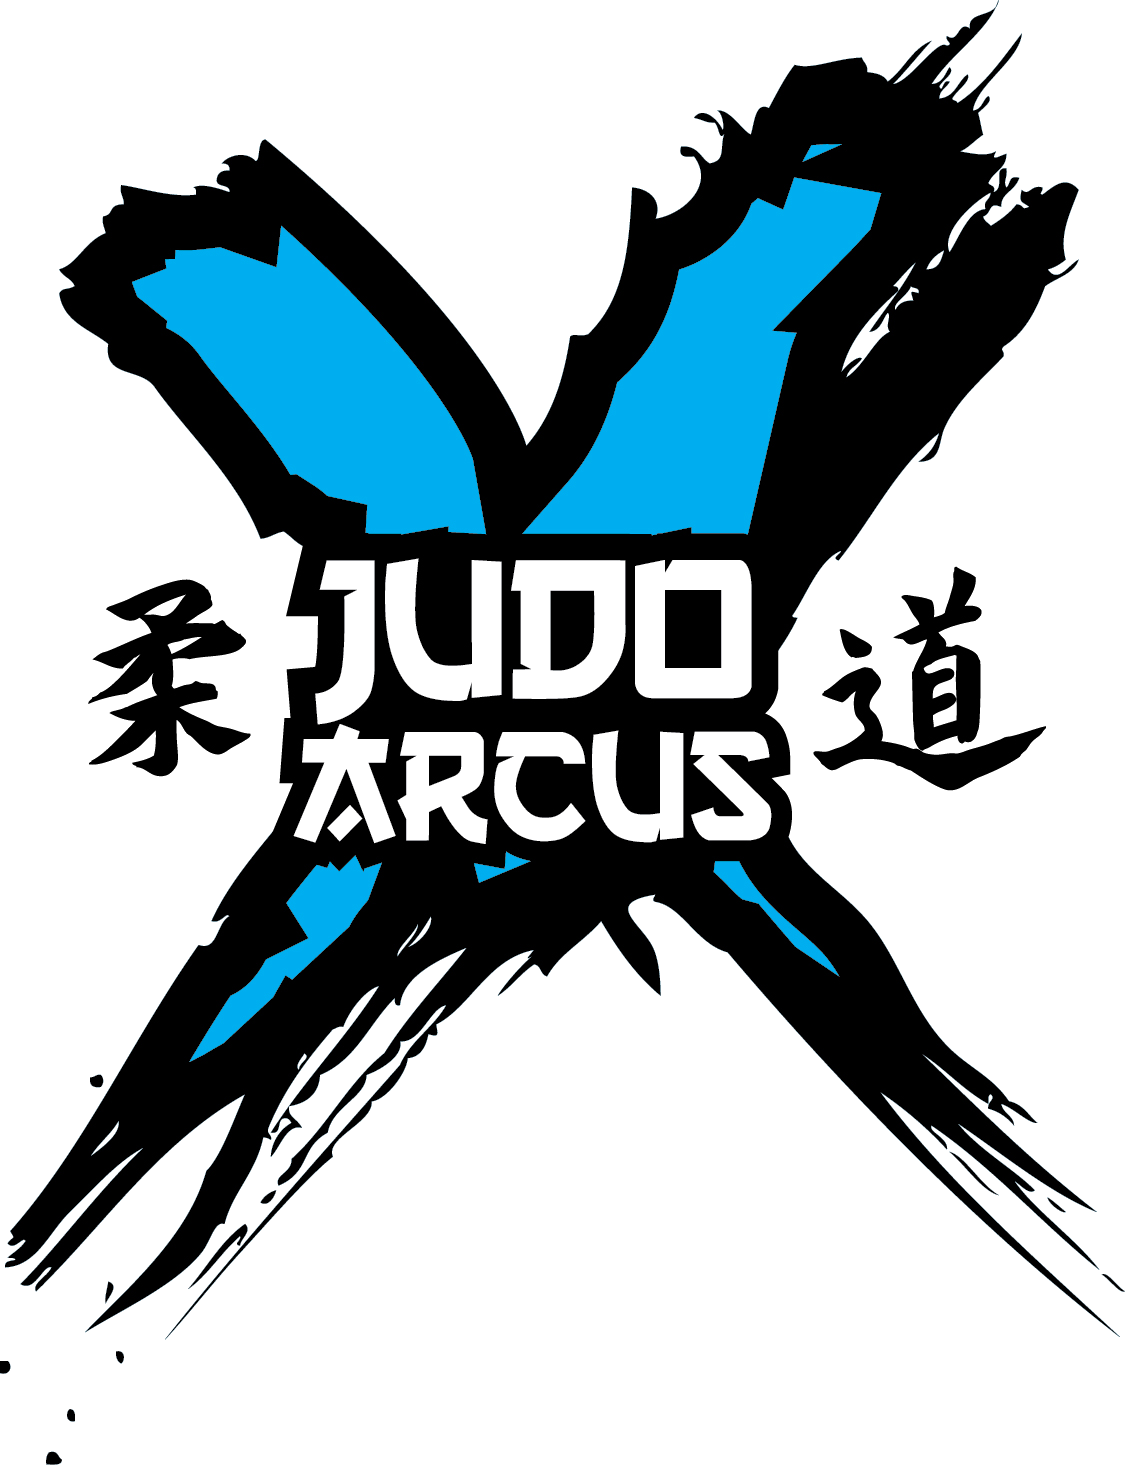 Judo Arcus